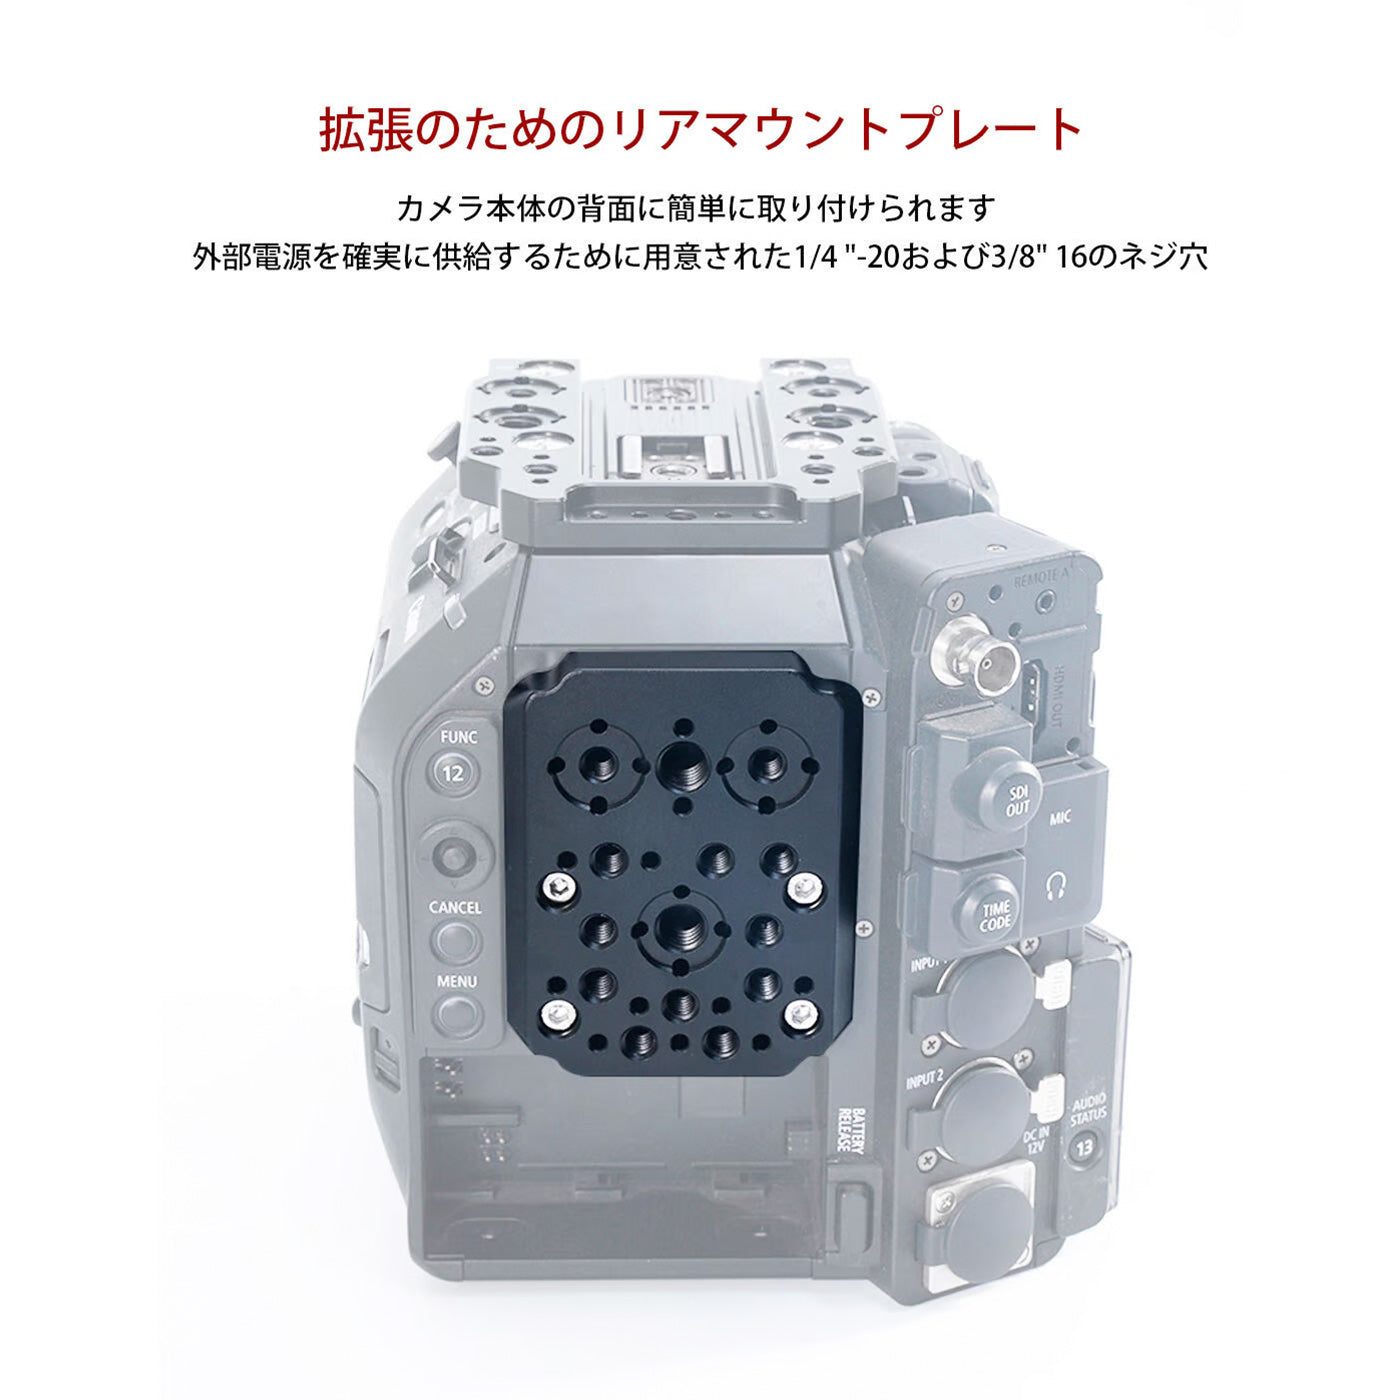 TILTA(ティルタ) Camera Cage for Canon C500 Mk II/C300 Mk III Kit B - Gold Mount(アントンマウント) ES-T19-B-AB